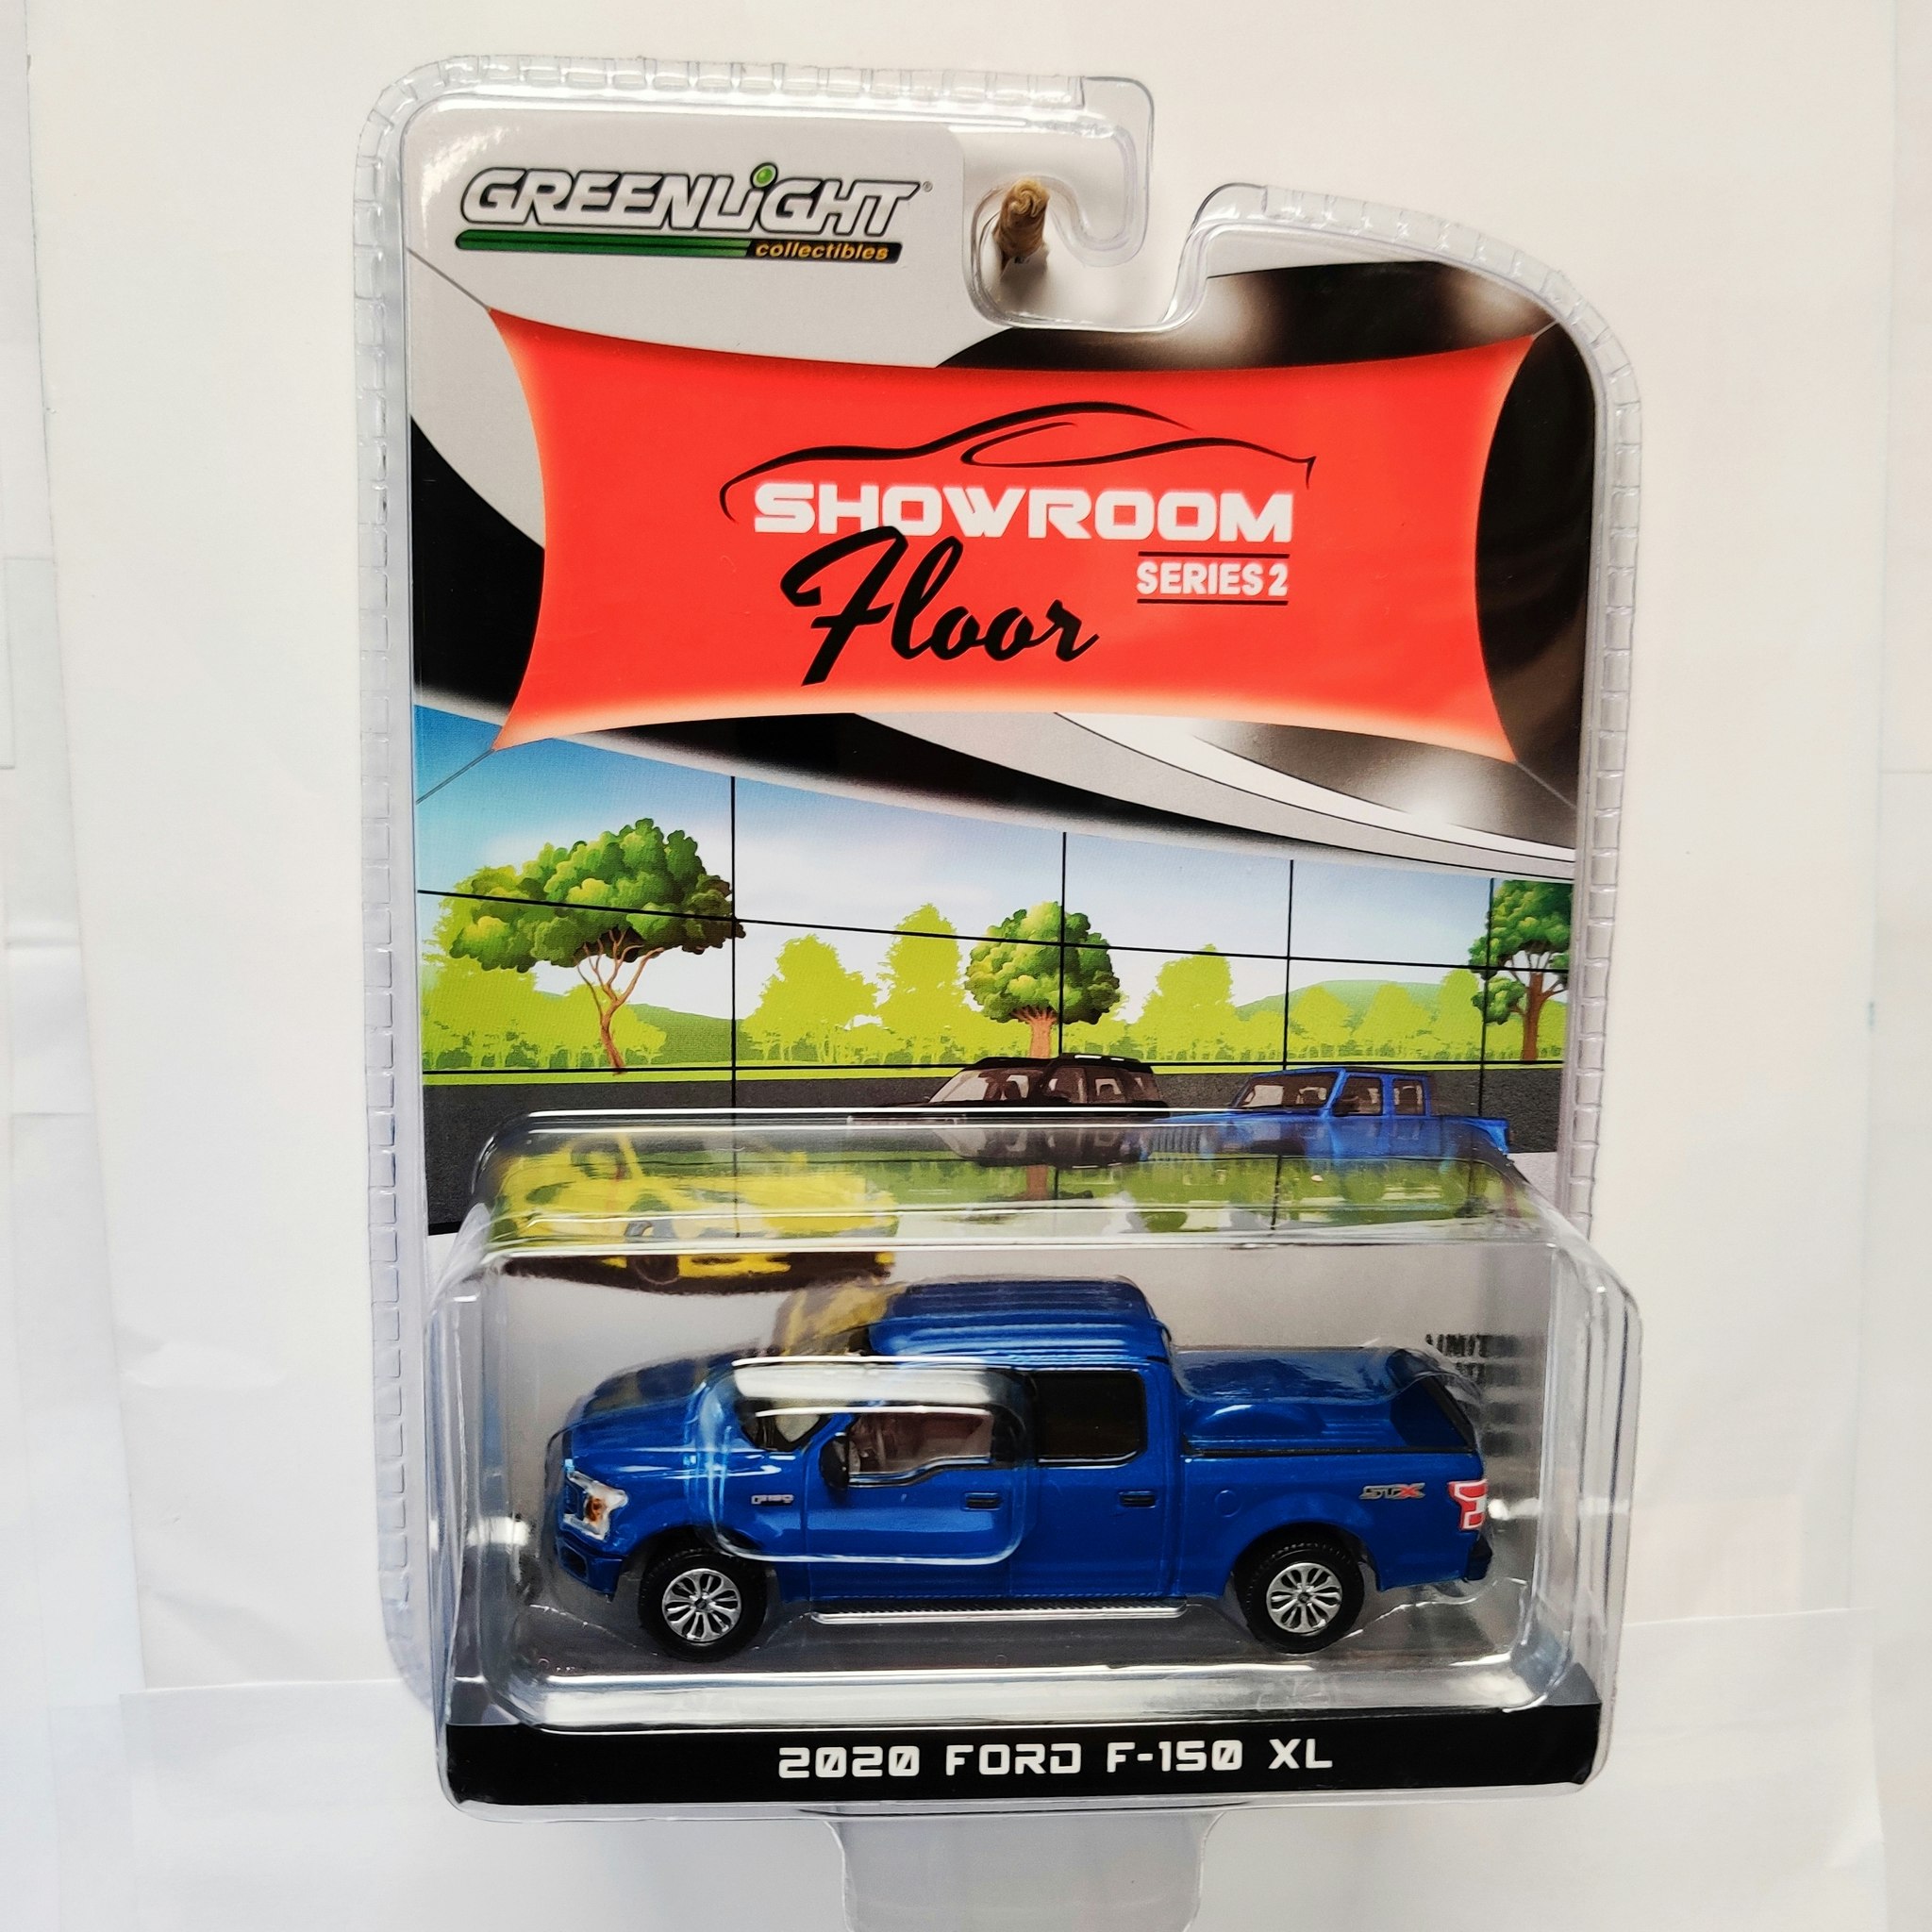 Skala 1/64 Ford F-150 XL 20' "Showroom Floor" Ser.2 fr Greenlight